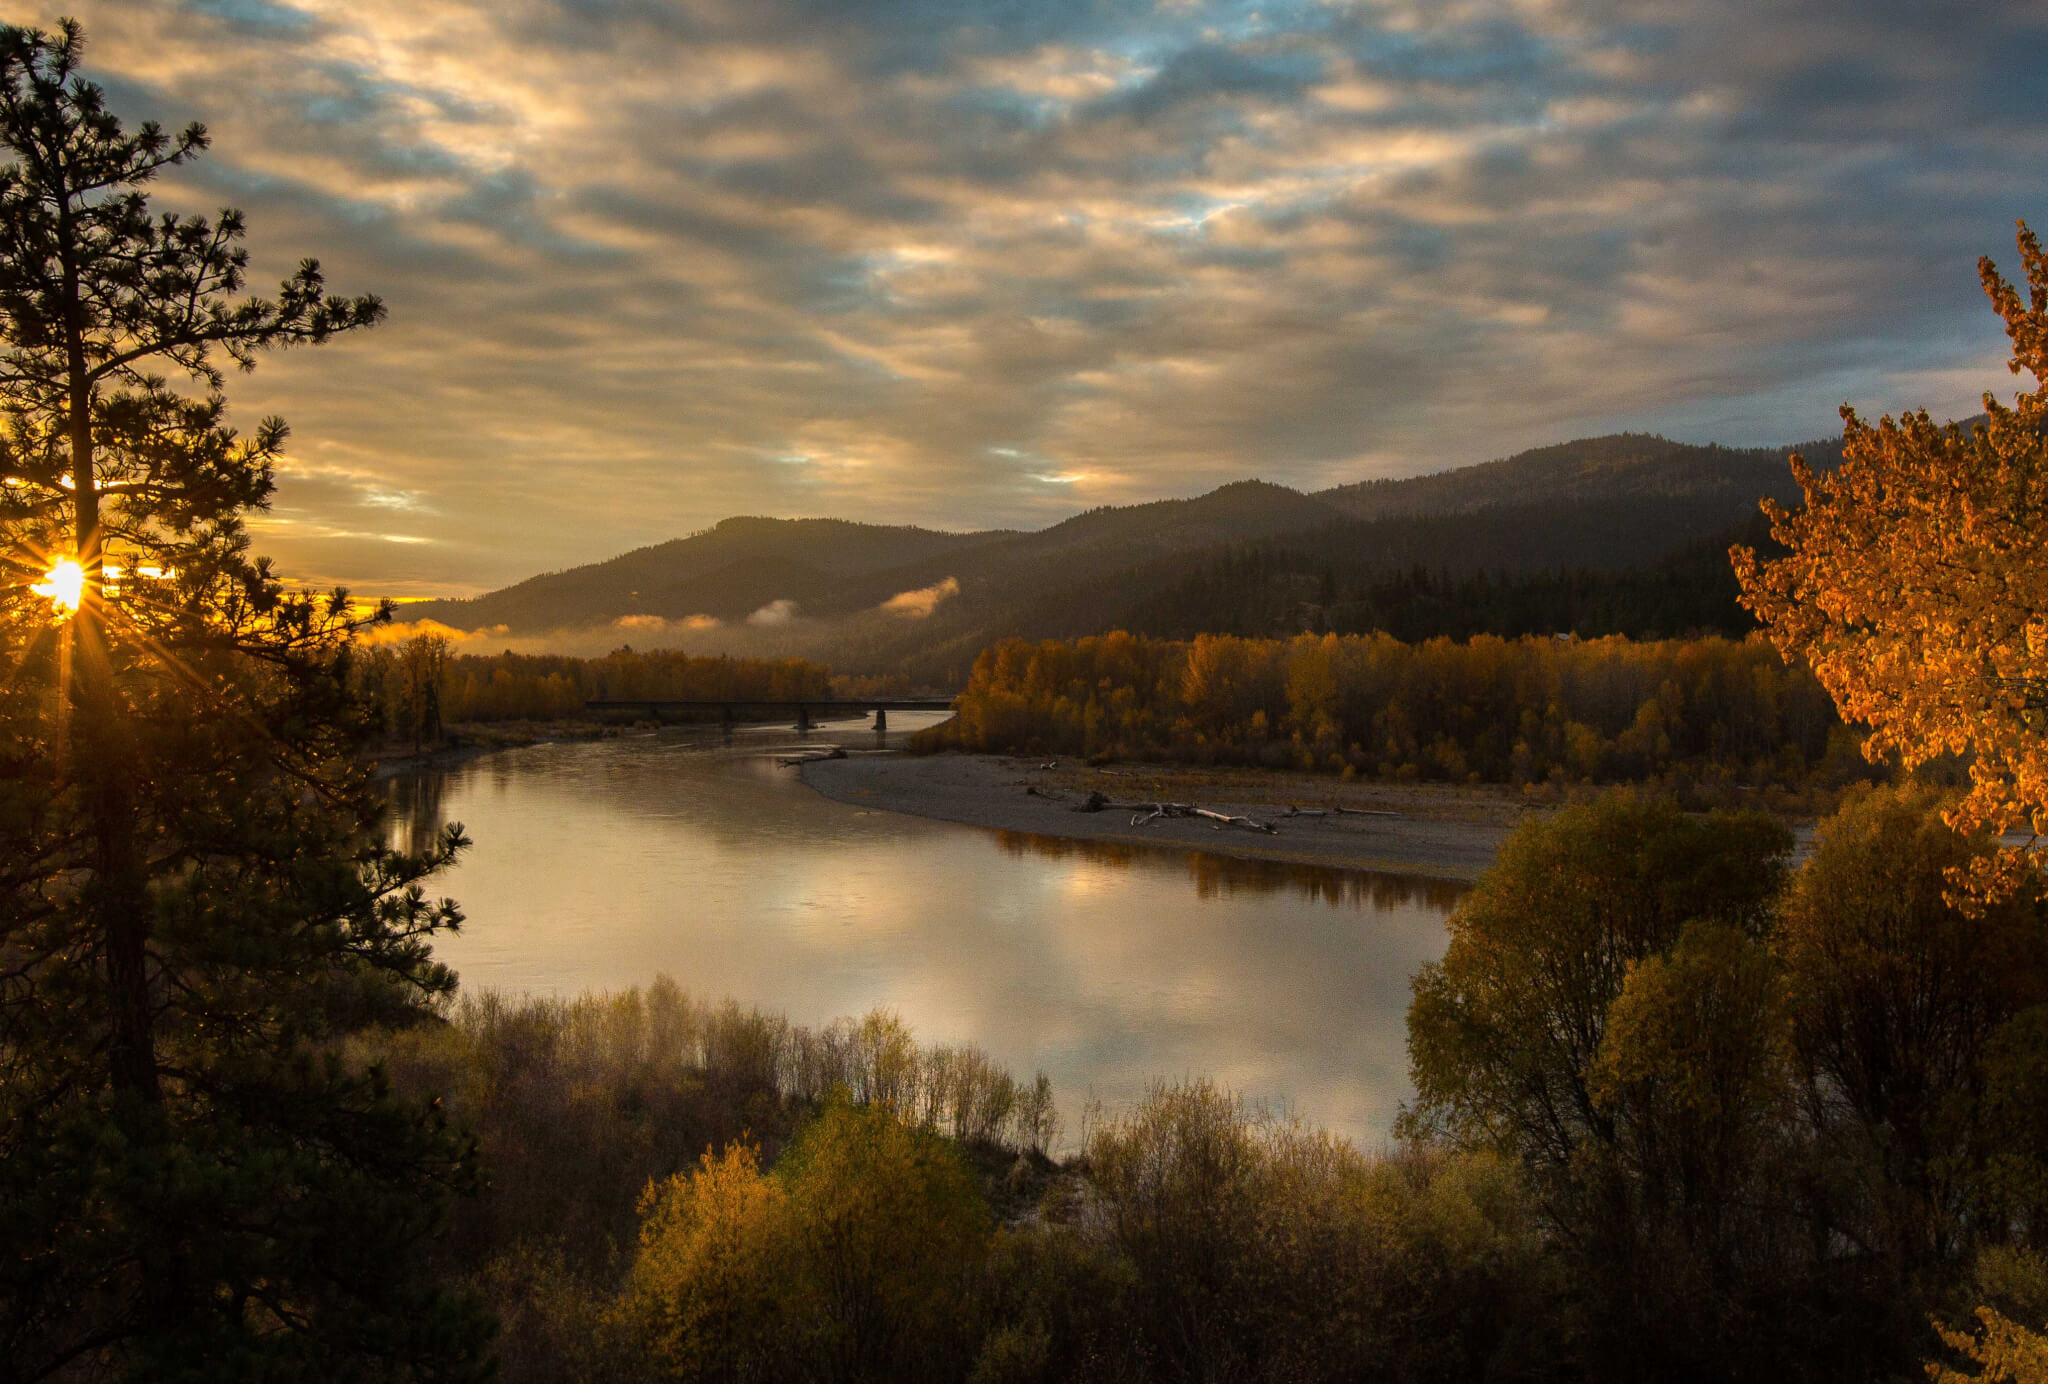 Montana river at sunset.